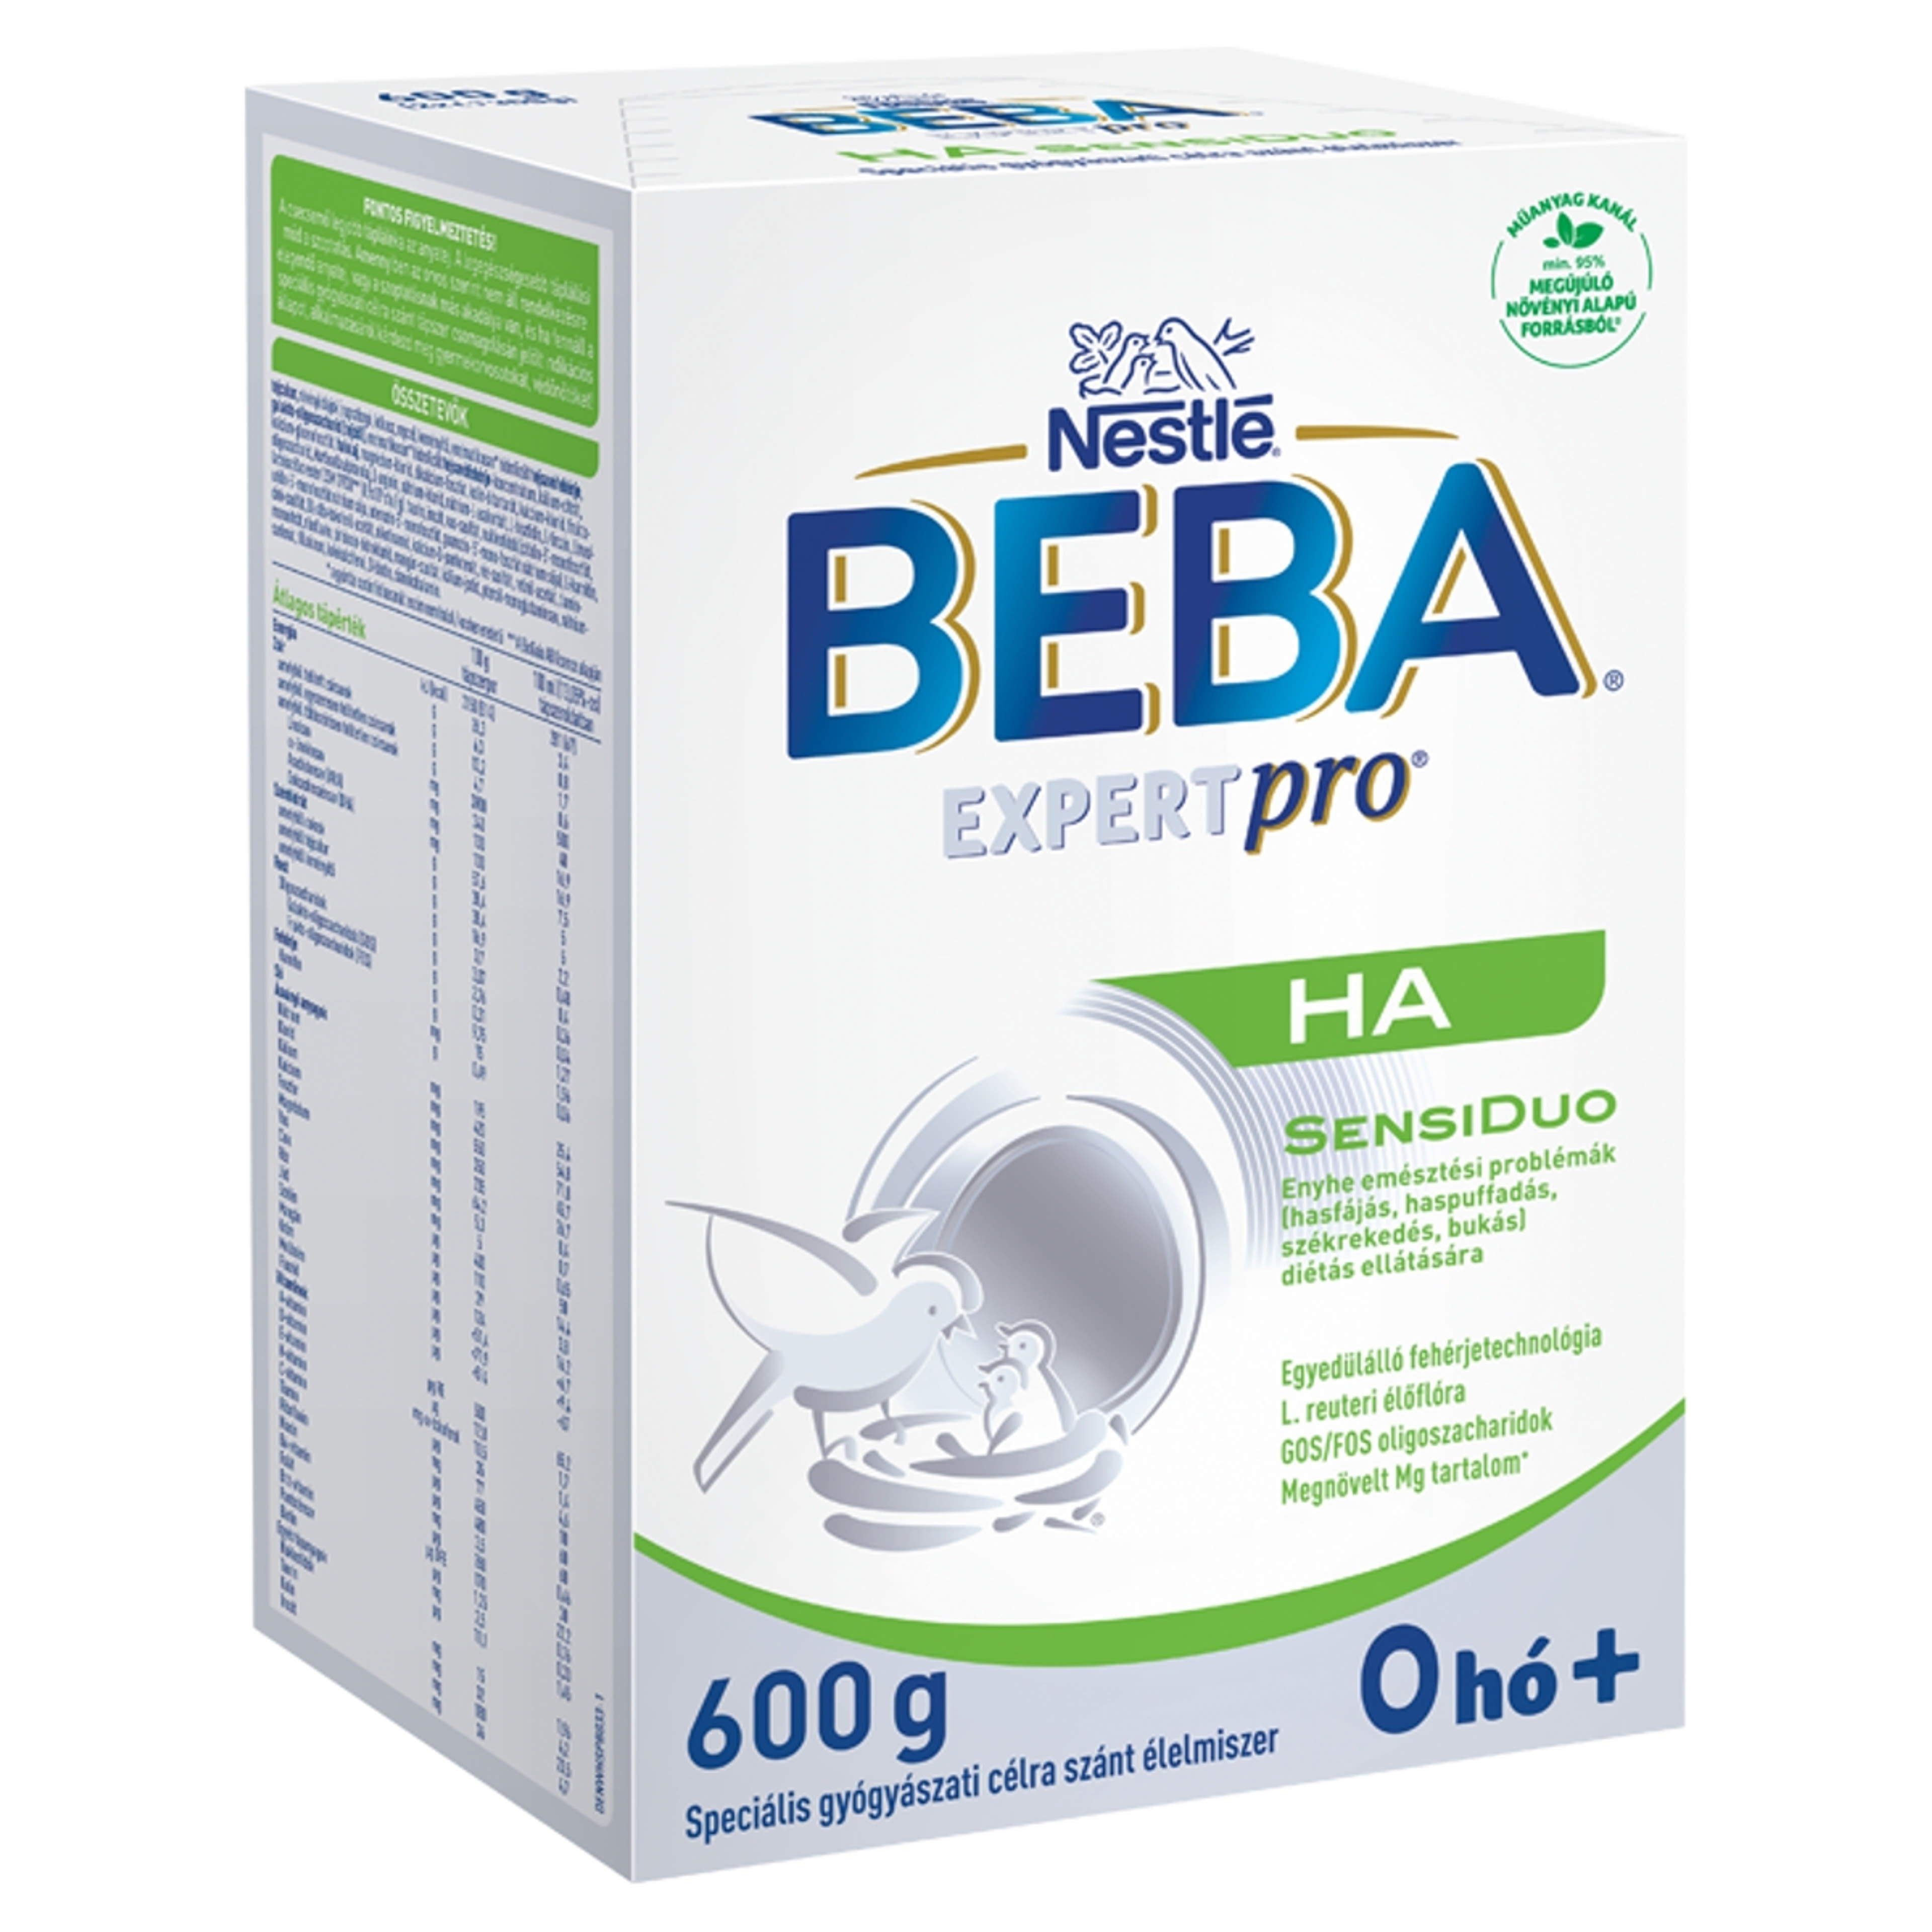 Beba ExpertPro HA SensiDuo speciális gyógyászati célra szánt élelmiszer 0 hónapos kortól 2x300 g - 600 g-2